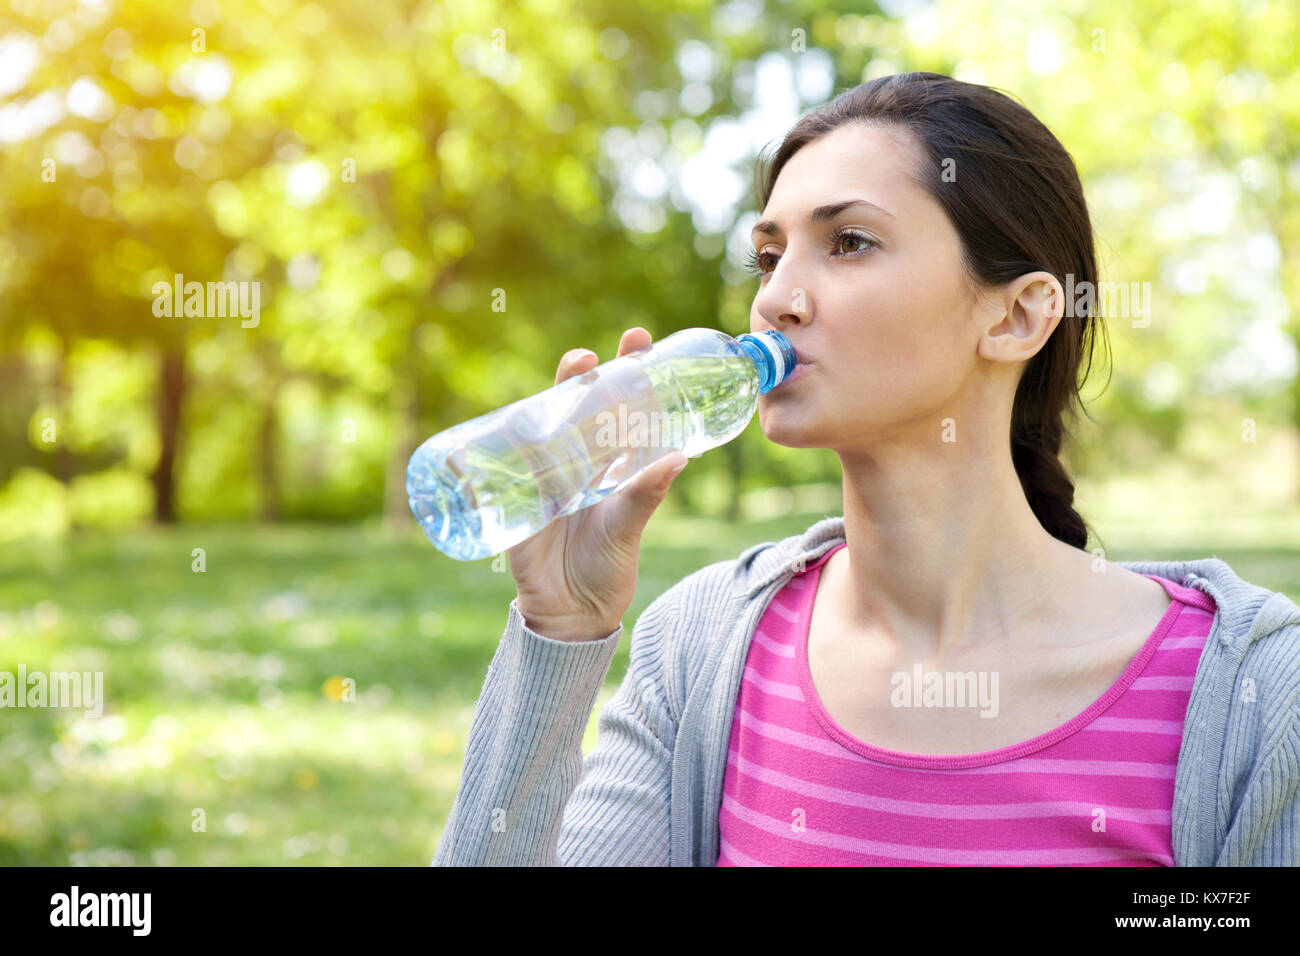 Запивать теплой водой. Девушка пьет таблетки. Девушка пьет витамины. Бутылка для воды Drink Water easy healthy Living. Киргизия женщина пьет воду.